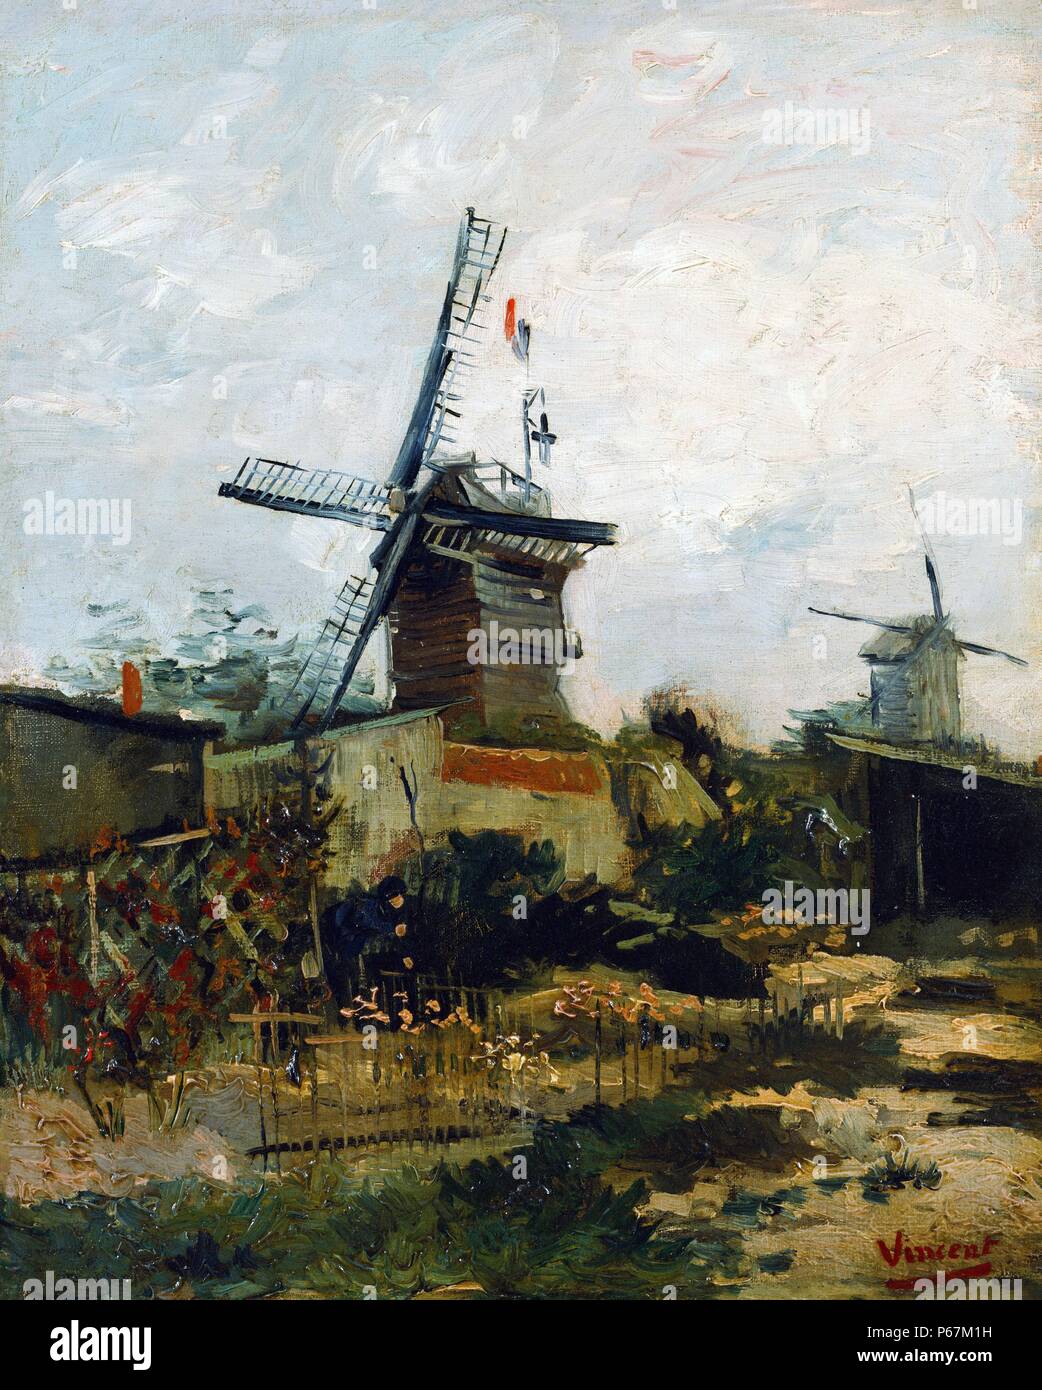 Peinture d'un moulin par Vincent van Gogh (1853-1890) peintre post-impressionniste d'origine néerlandaise. Datée 1880 Banque D'Images